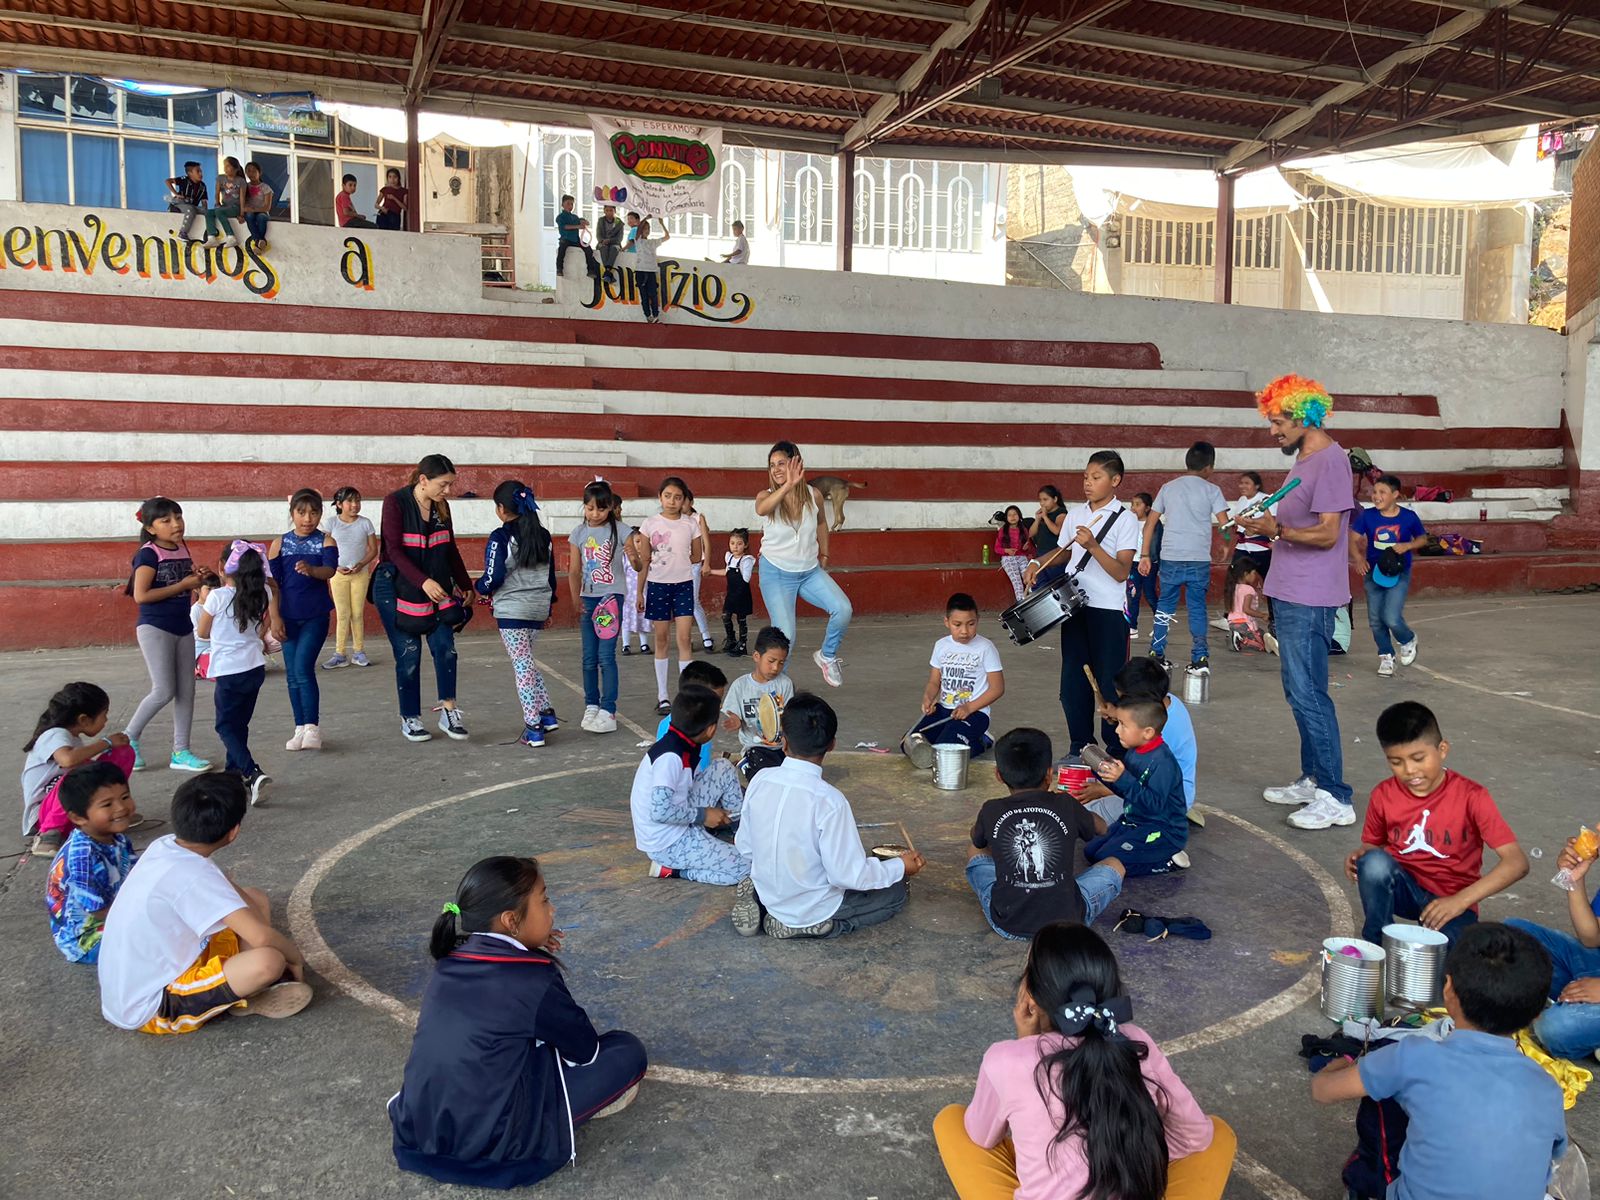 Entrada: Pequeño relato sobre el circo social: Convite cultural en Janitzio, Michoacán